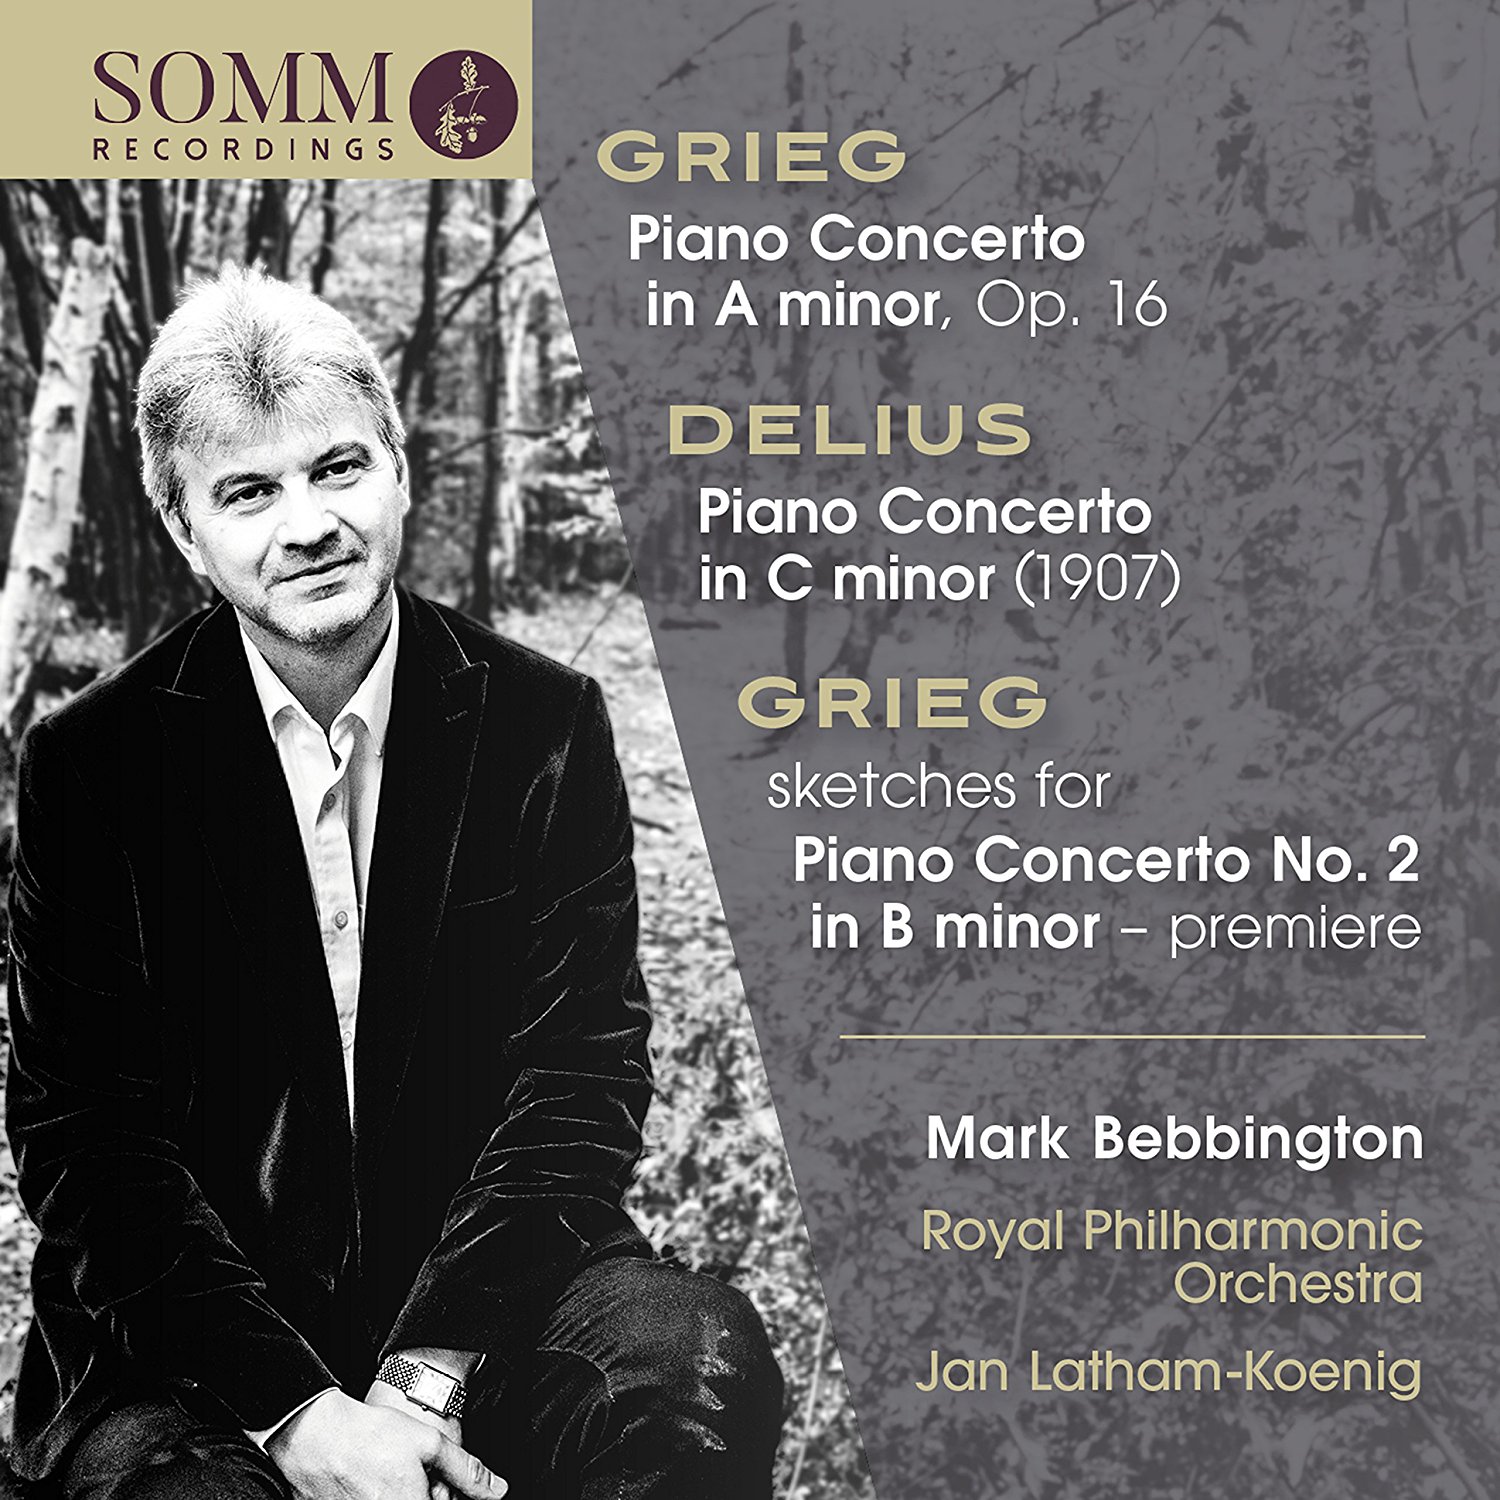 Bebbington's Grieg